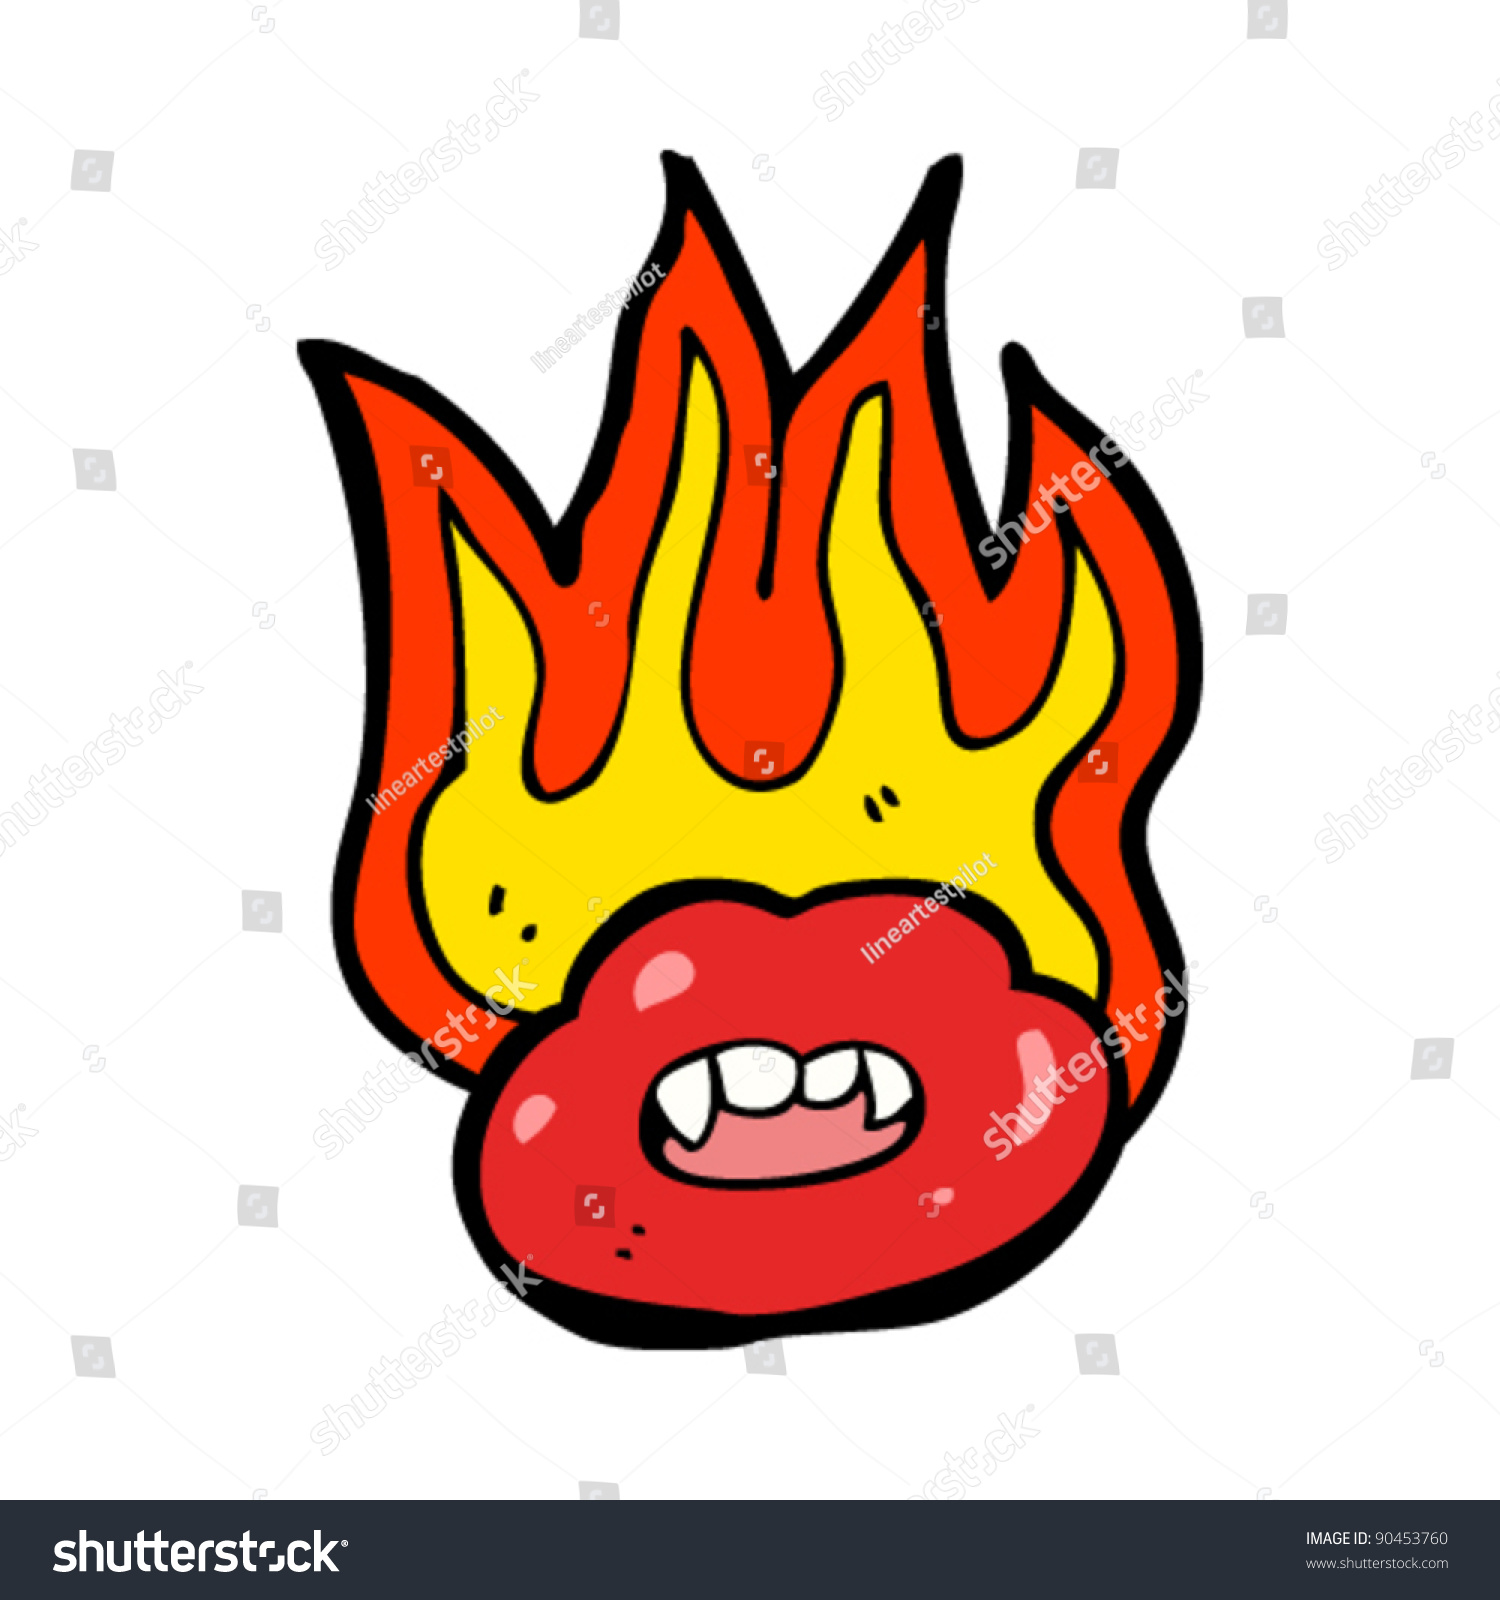 Flaming Lips Cartoon Stock Vector Illustration 90453760 : Shutterstock